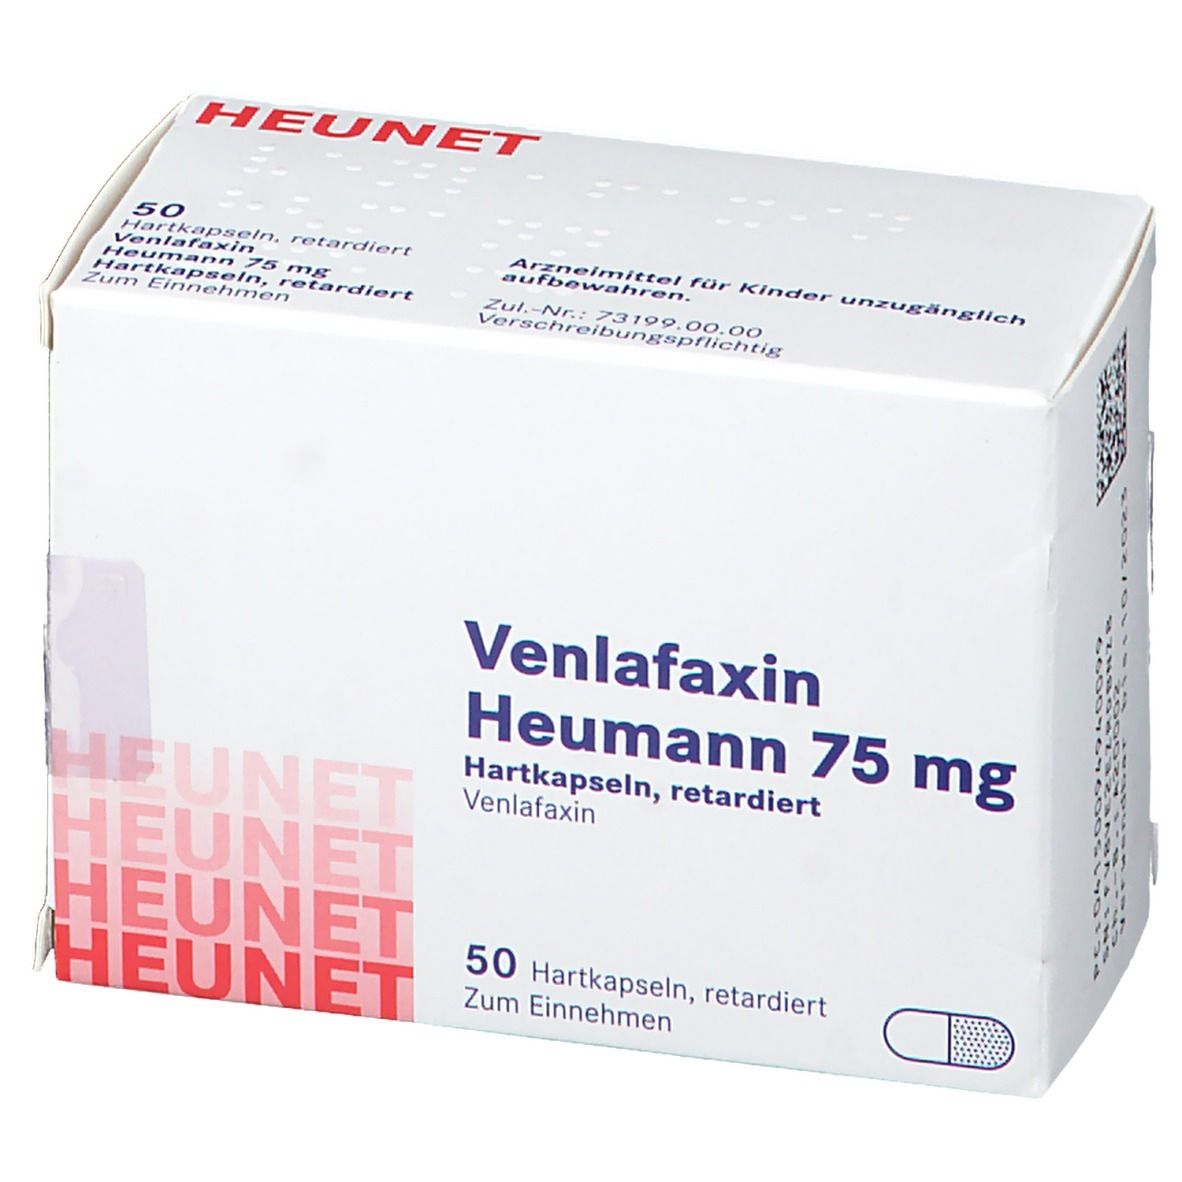 Venlafaxin Heumann 75 mg